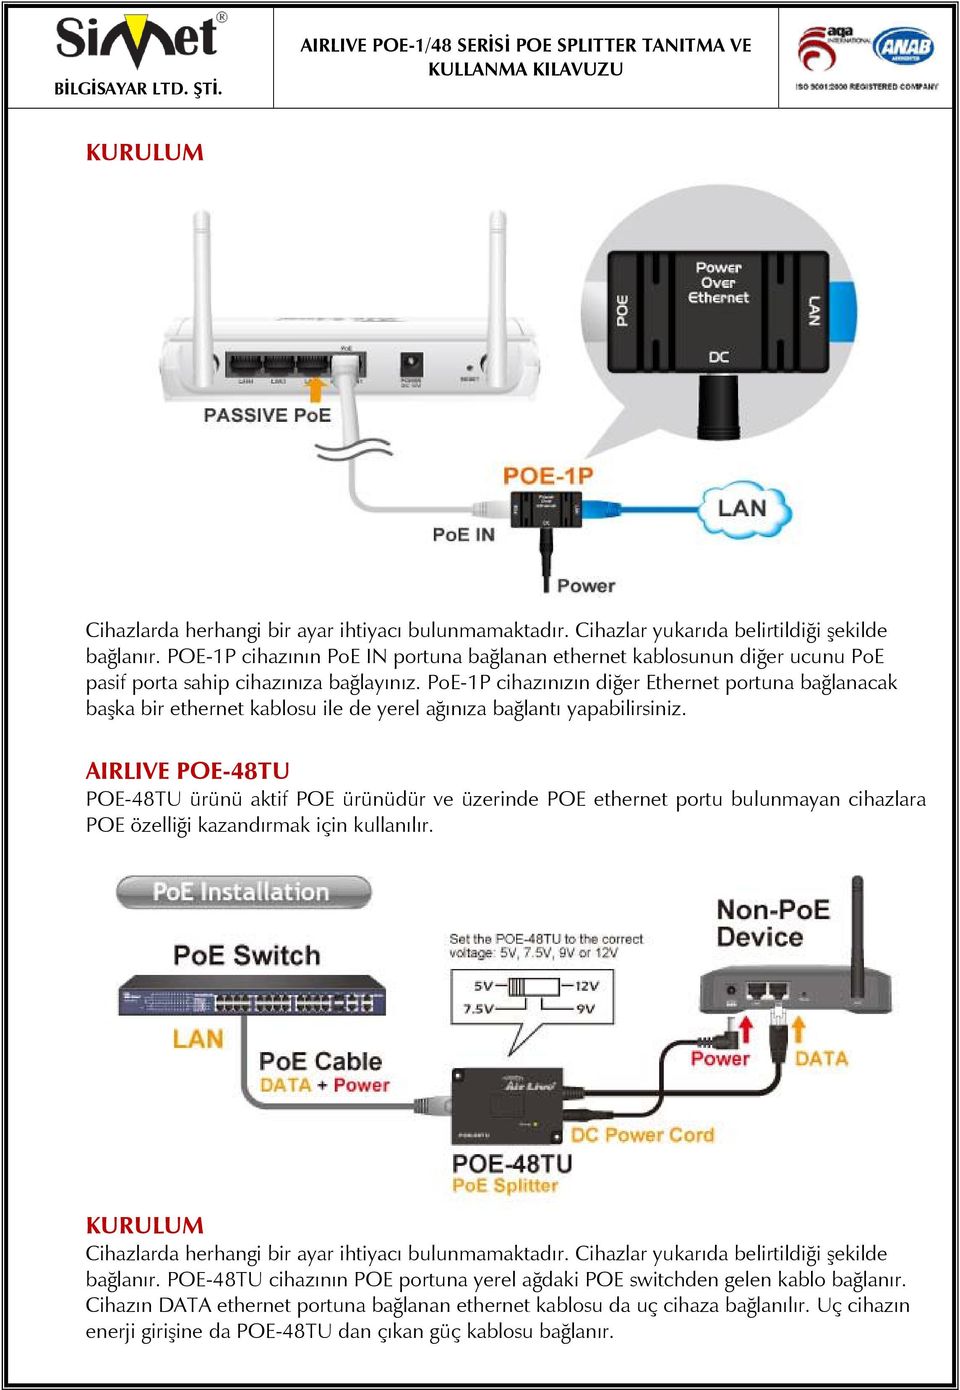 PoE-1P cihazınızın diğer Ethernet portuna bağlanacak başka bir ethernet kablosu ile de yerel ağınıza bağlantı yapabilirsiniz.